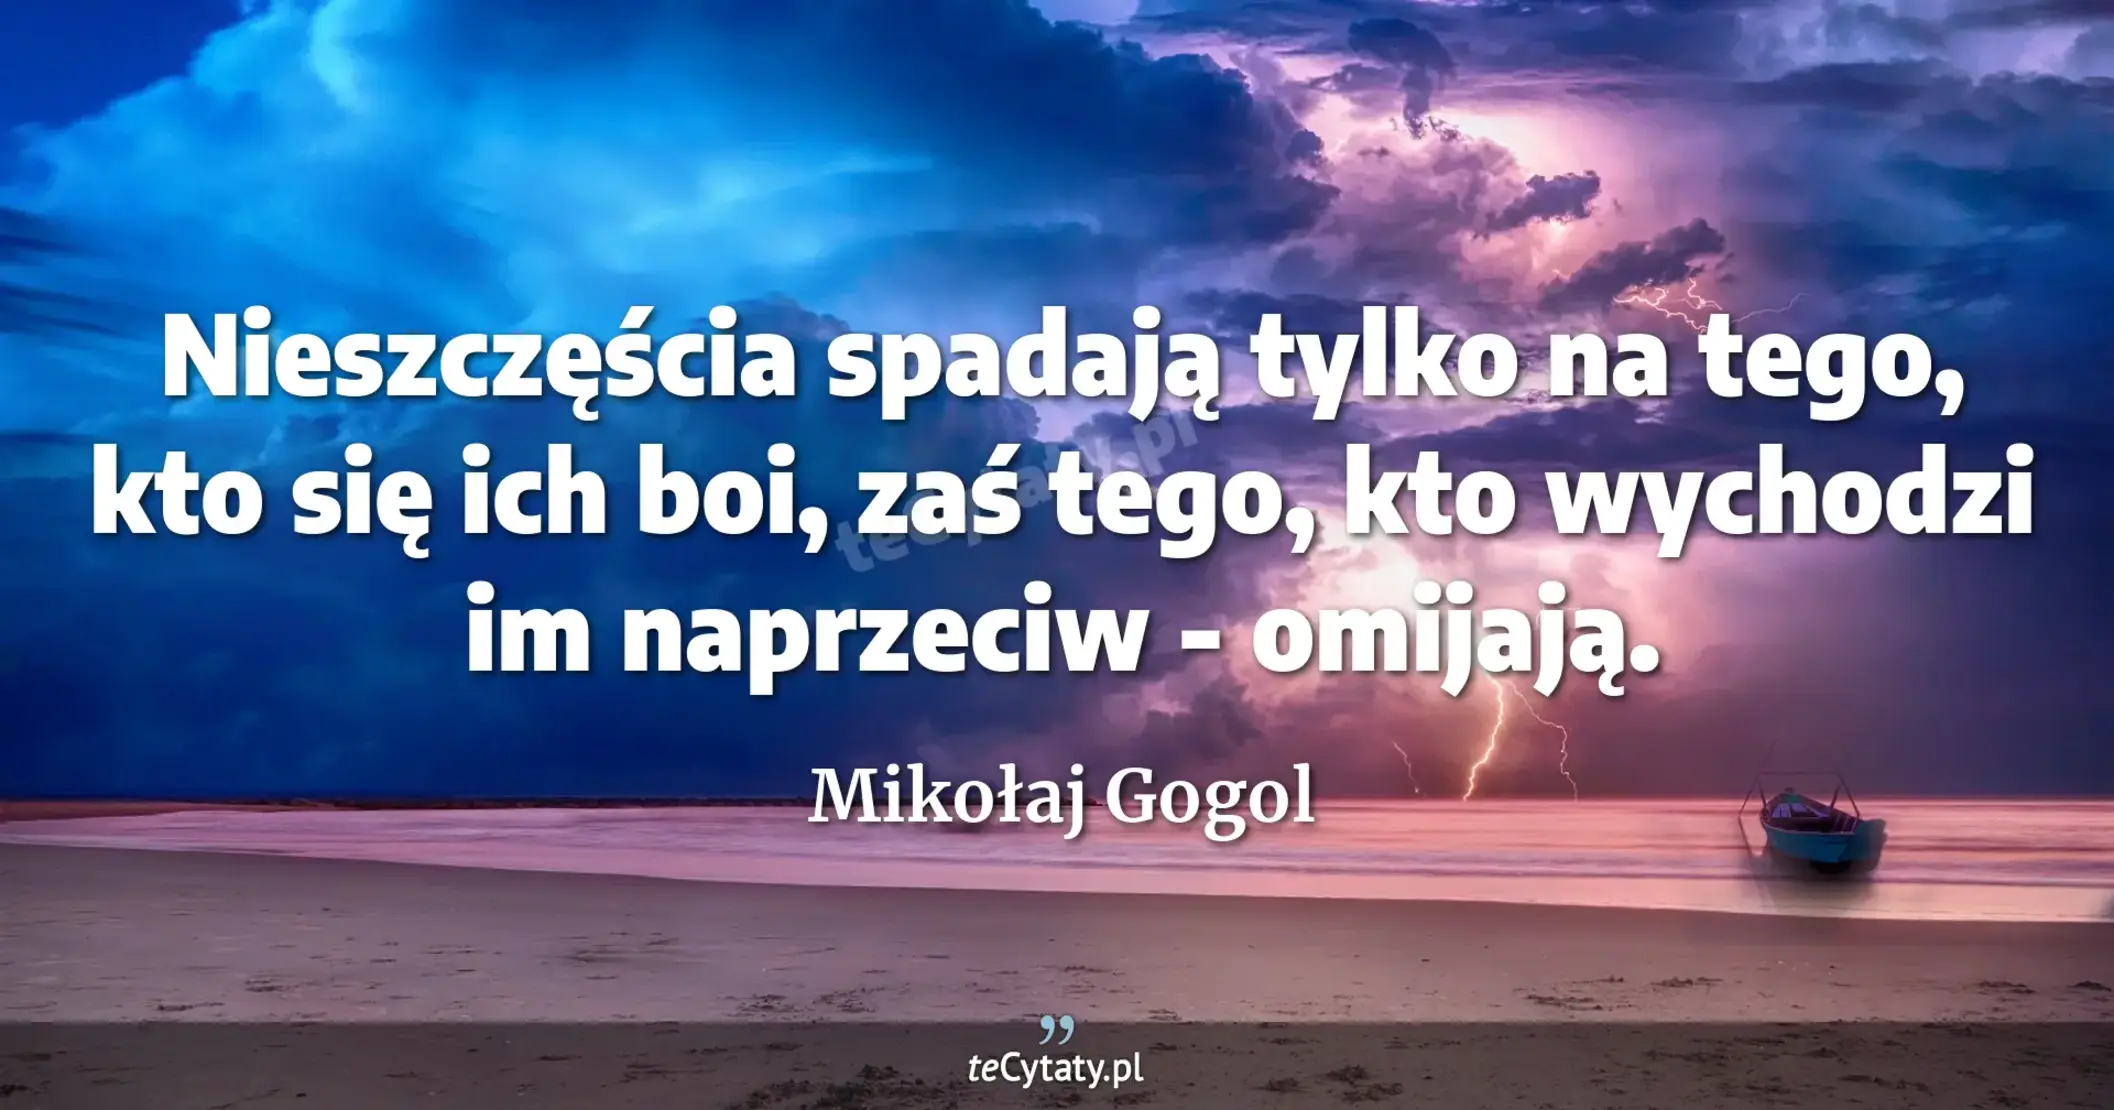 Nieszczęścia spadają tylko na tego, kto się ich boi, zaś tego, kto wychodzi im naprzeciw - omijają. - Mikołaj Gogol